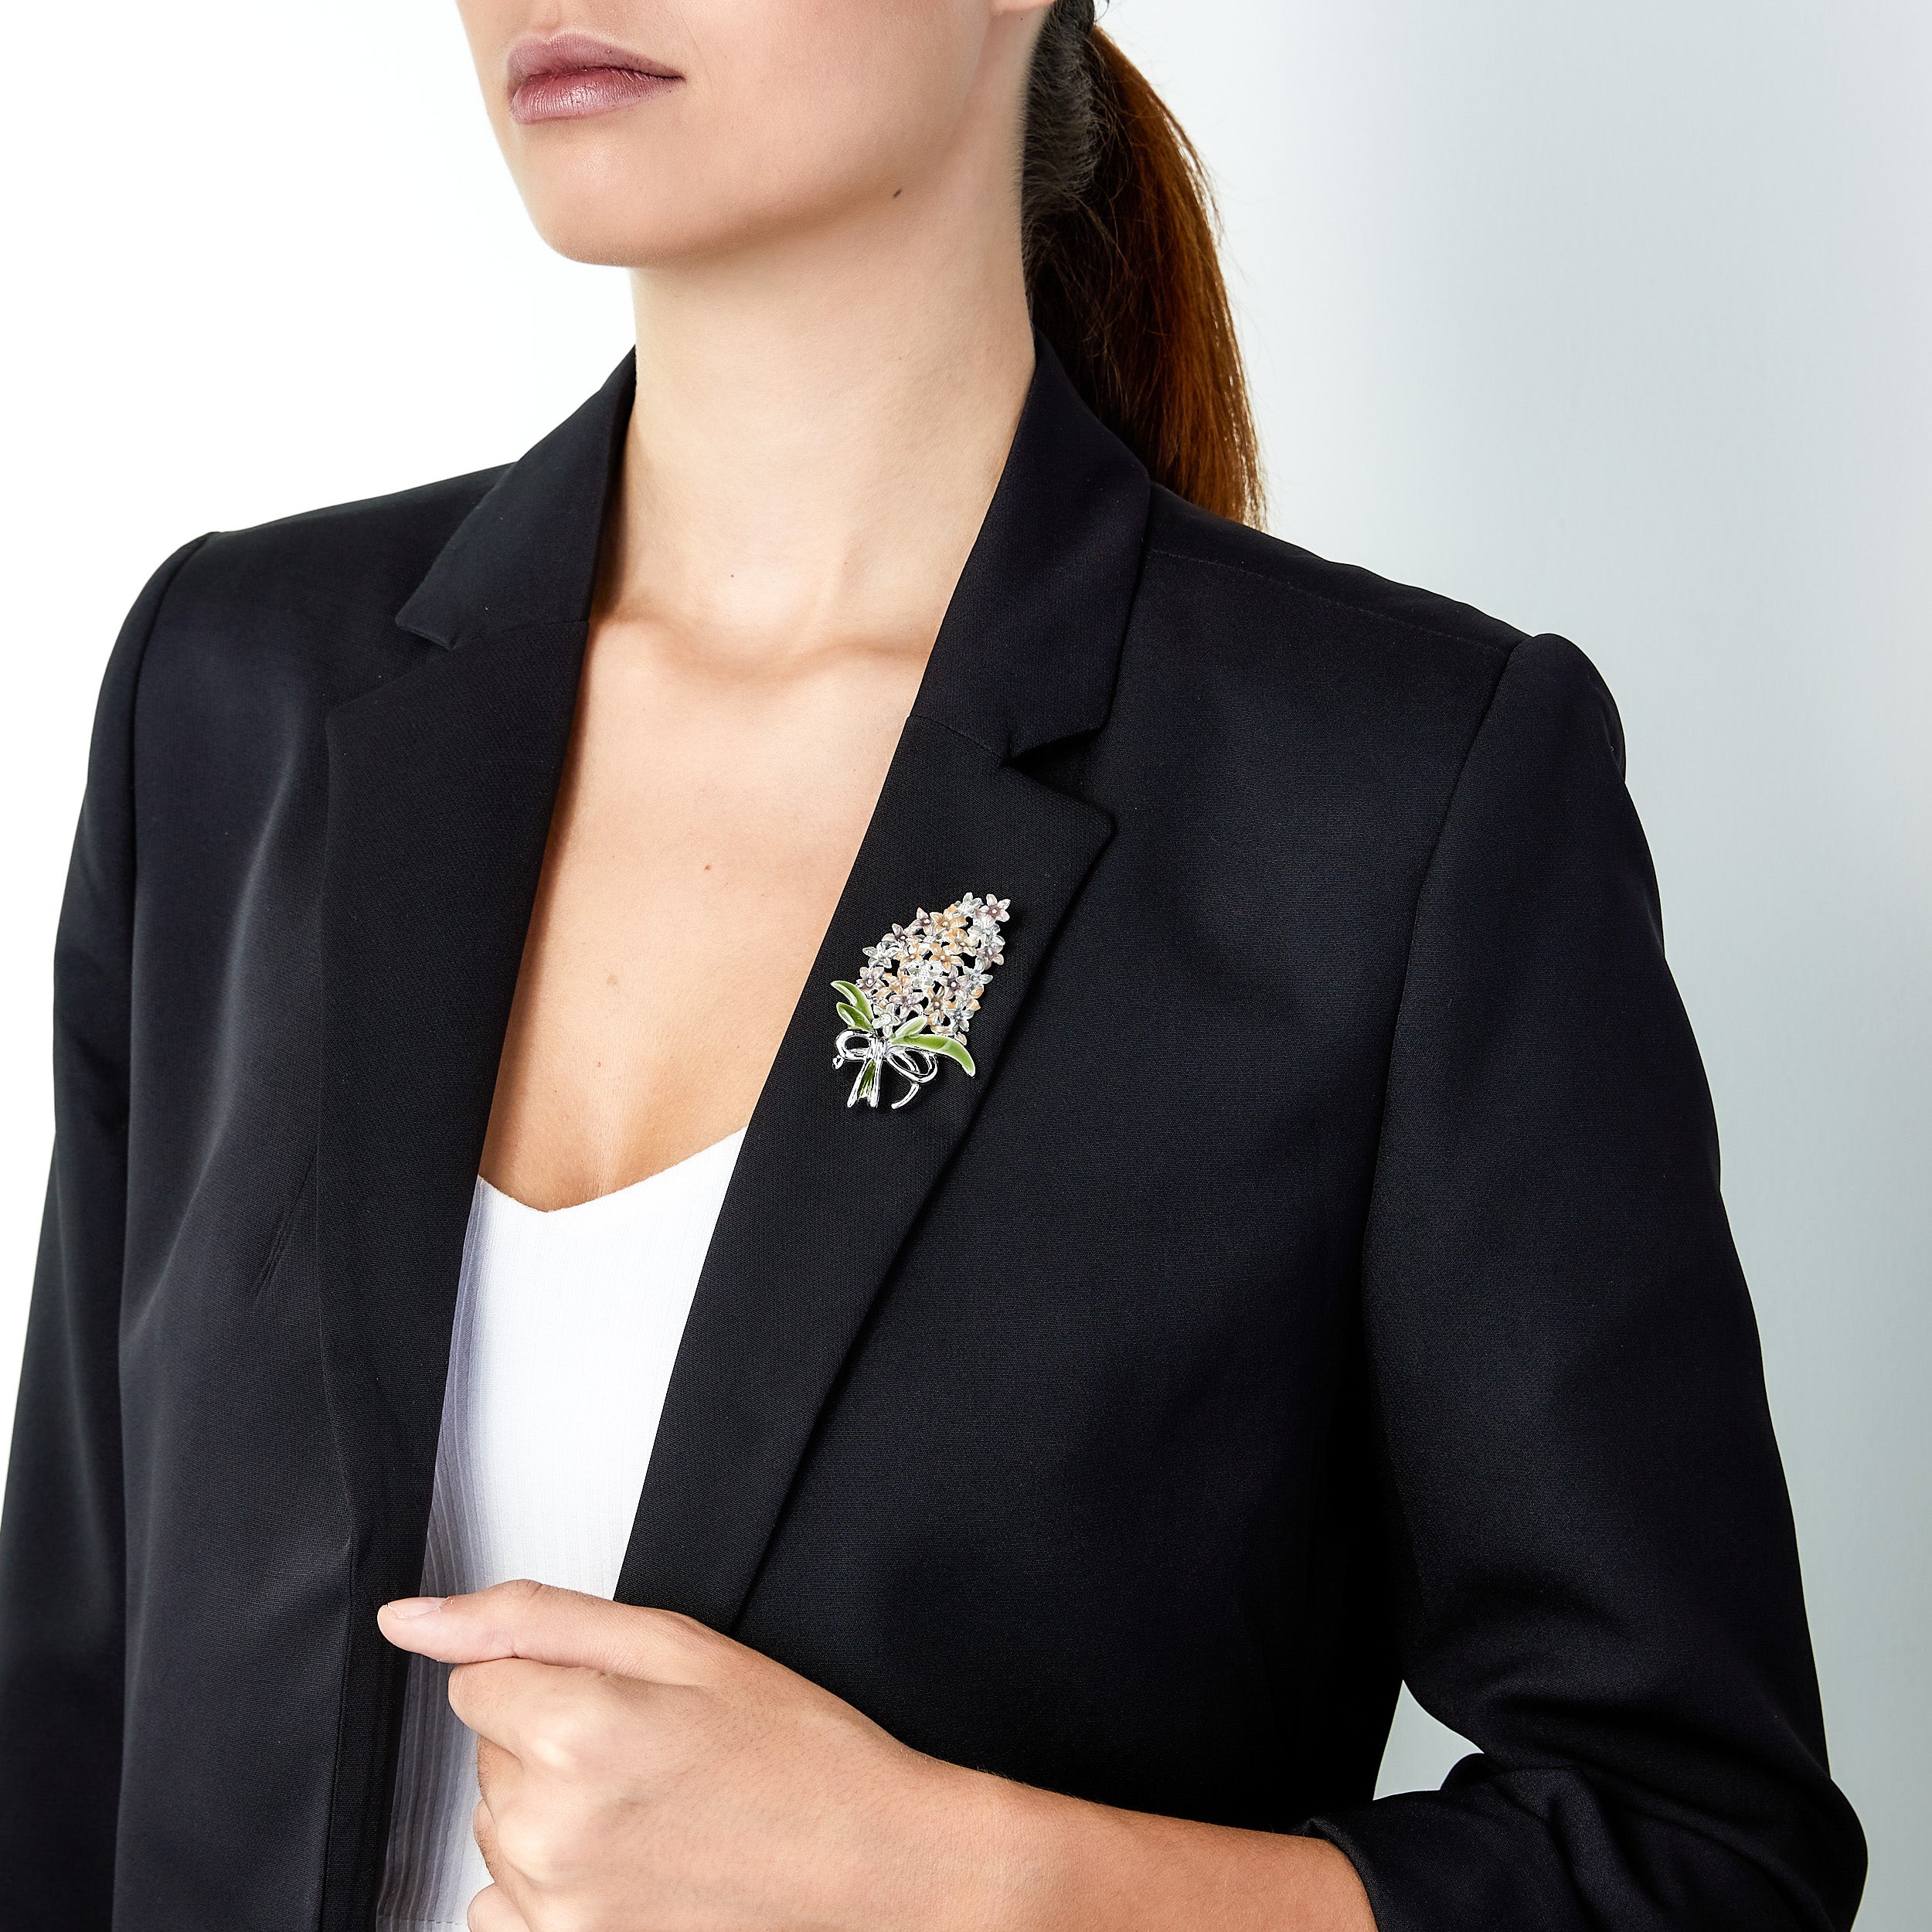 Vintage flower bouquet brooch pin worn on woman’s lapel